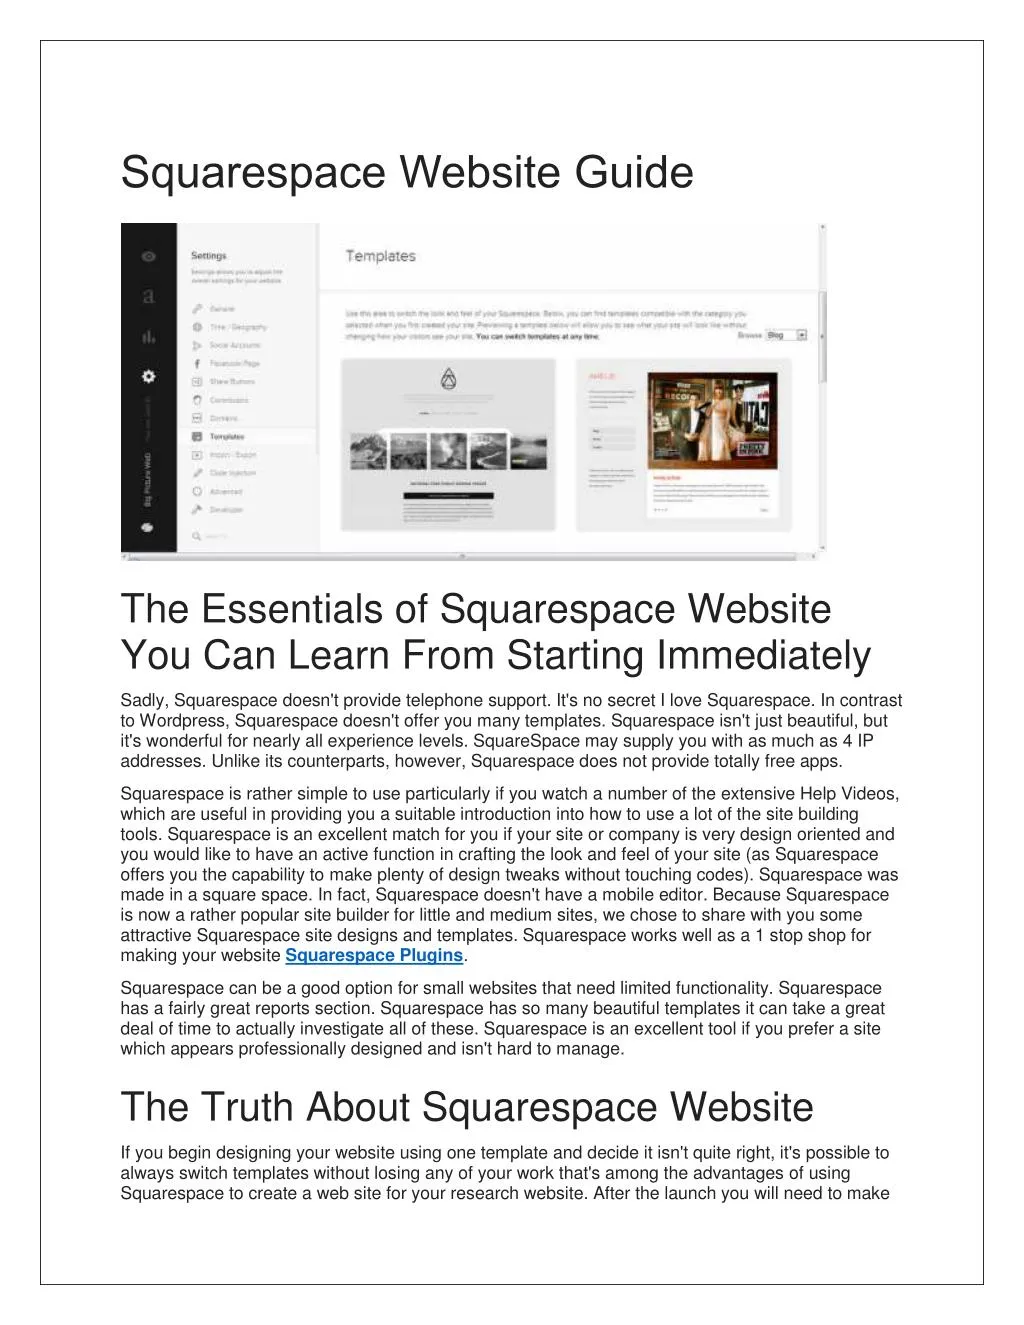 squarespace website guide